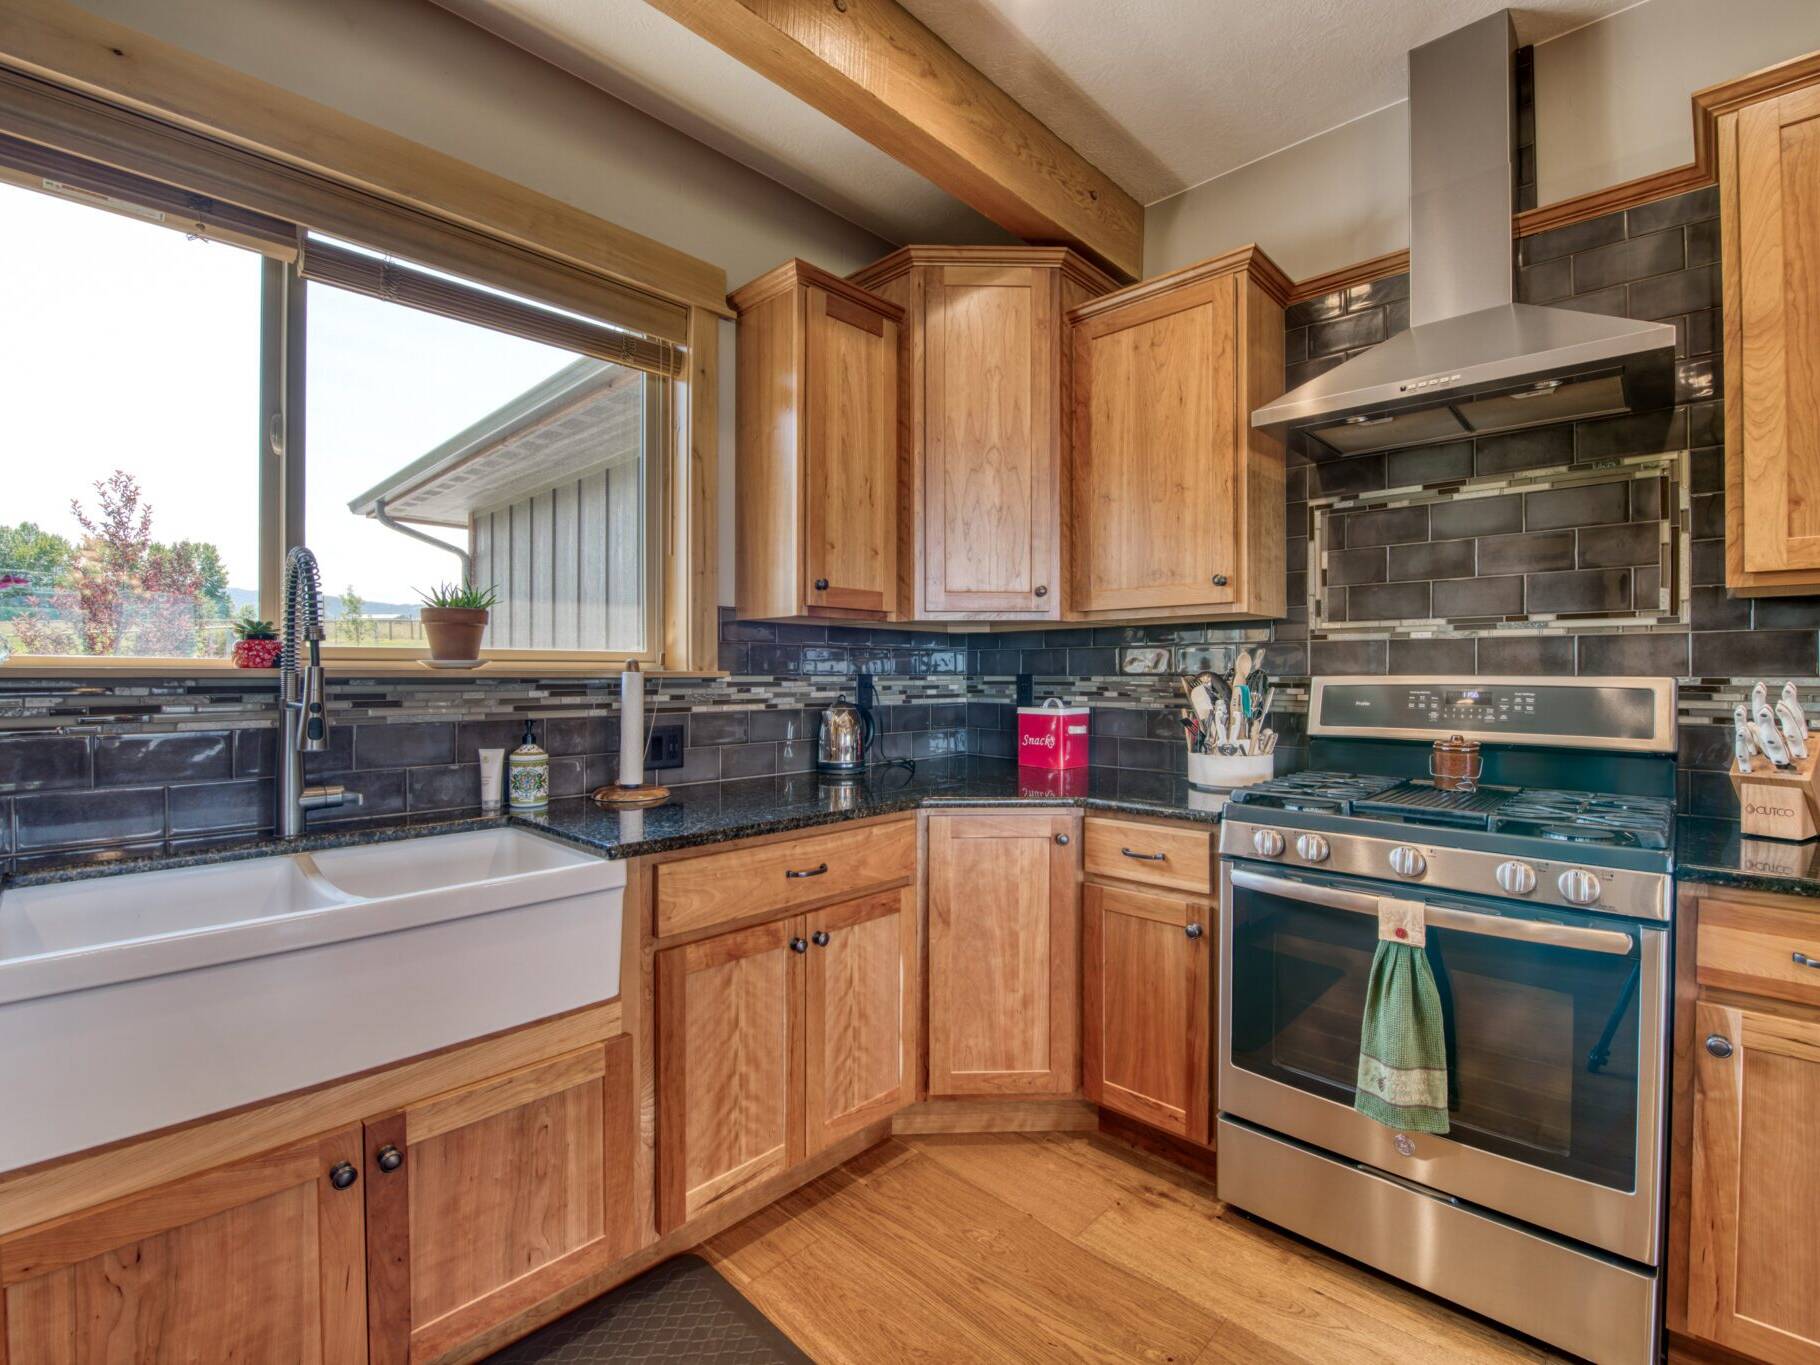 Kitchen farm sink & gas range with tile backsplash in a custom home built by Big Sky Builders in Stevensville, MT